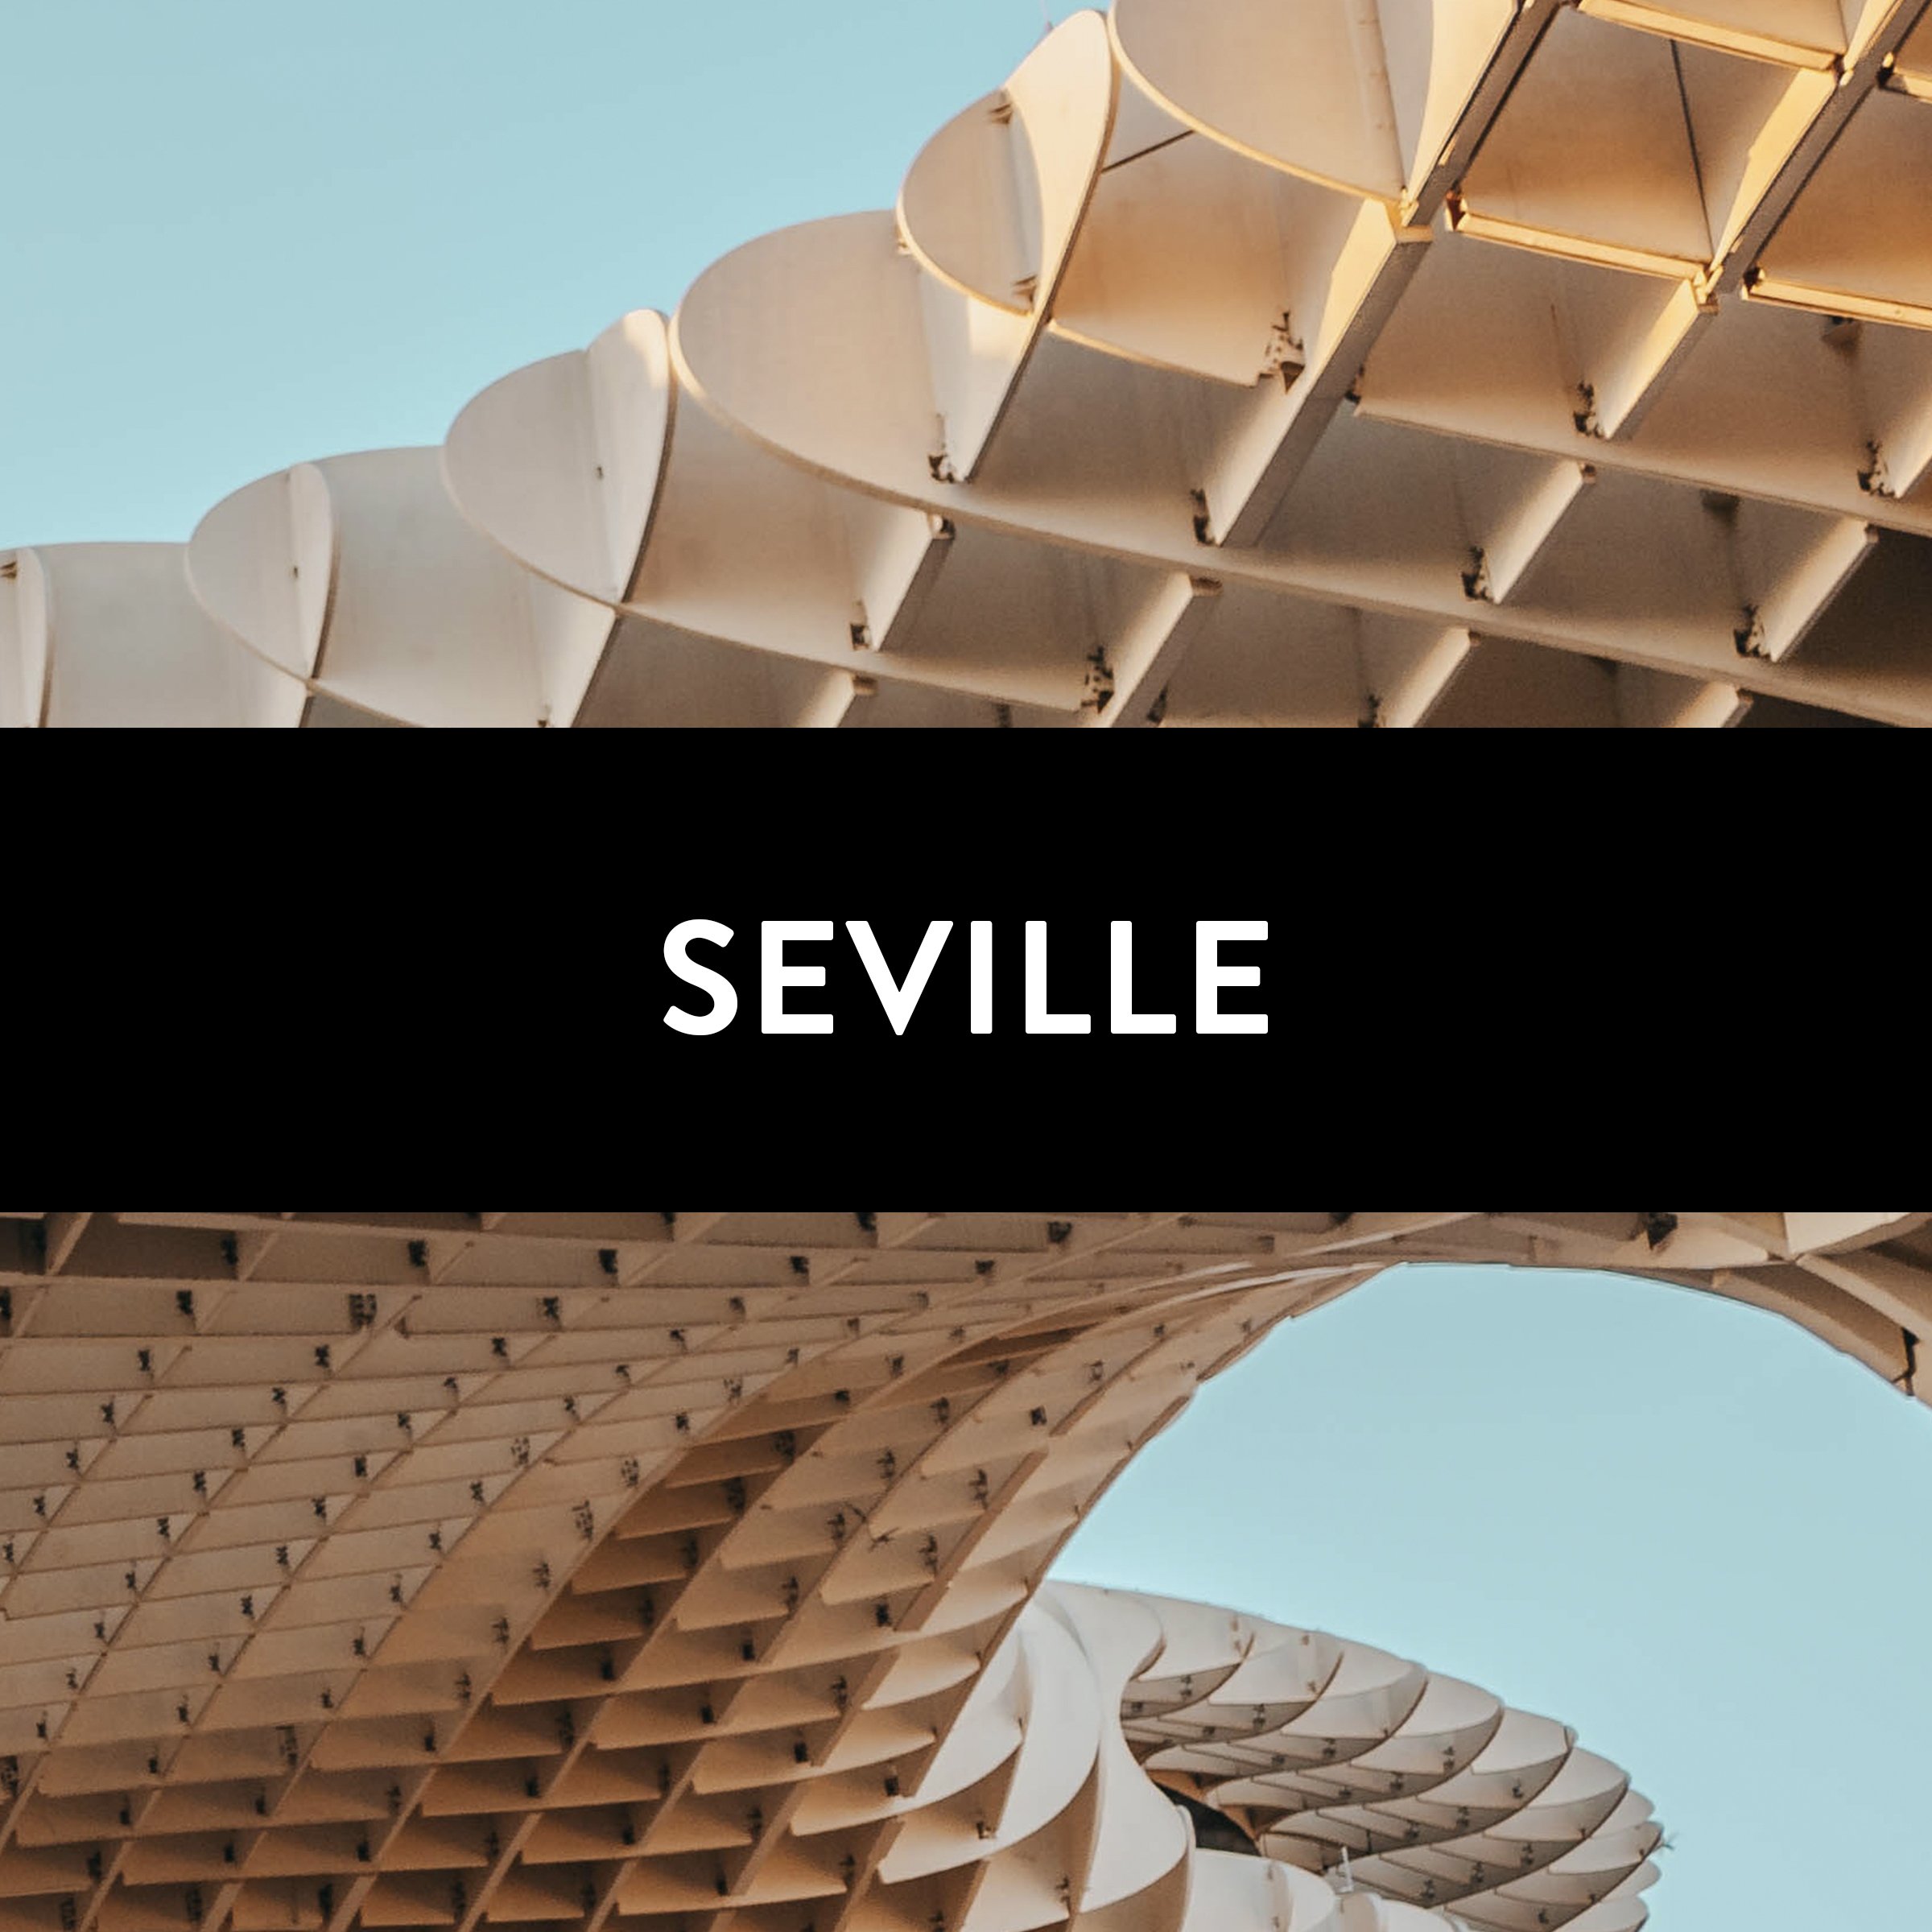 Cover - Seville.jpg